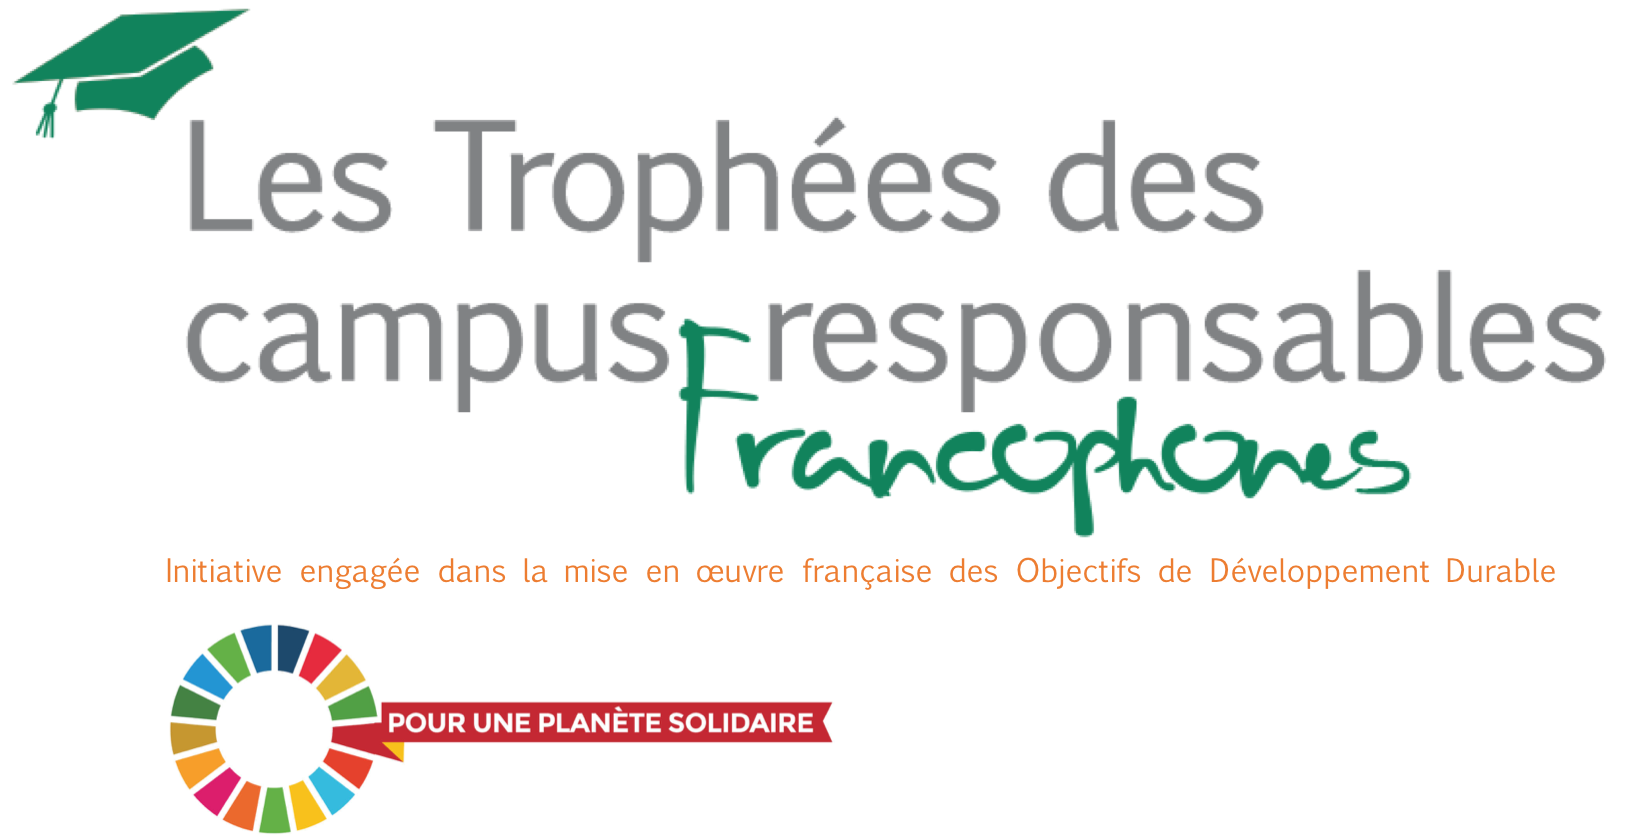 Campus Responsables ouvre la 7ème édition des Trophées des campus responsables